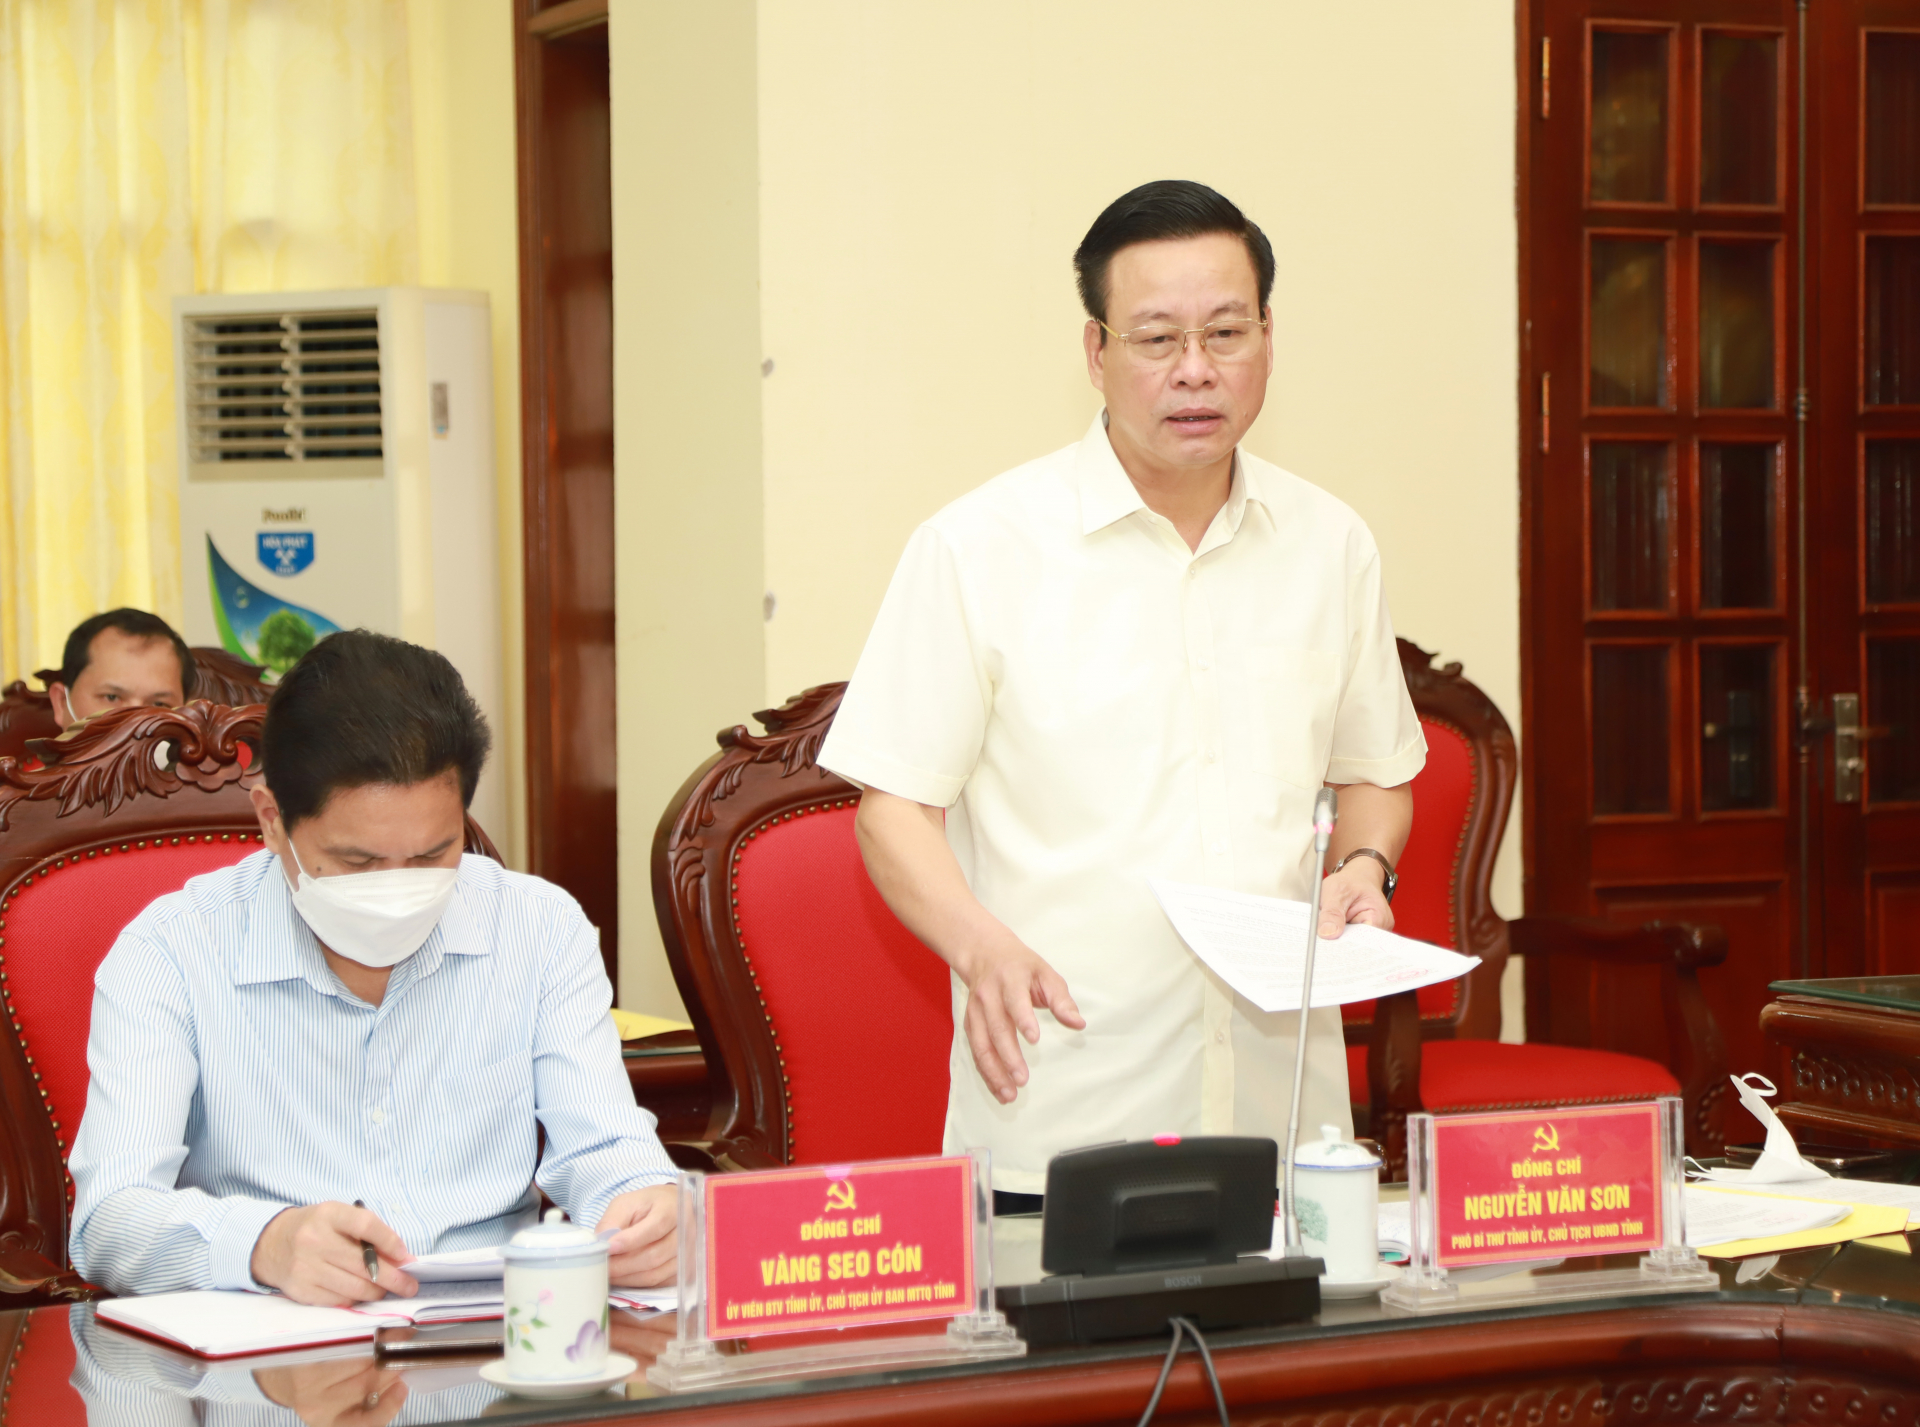 Chủ tịch UBND tỉnh Nguyễn Văn Sơn điều hành phần thảo luận